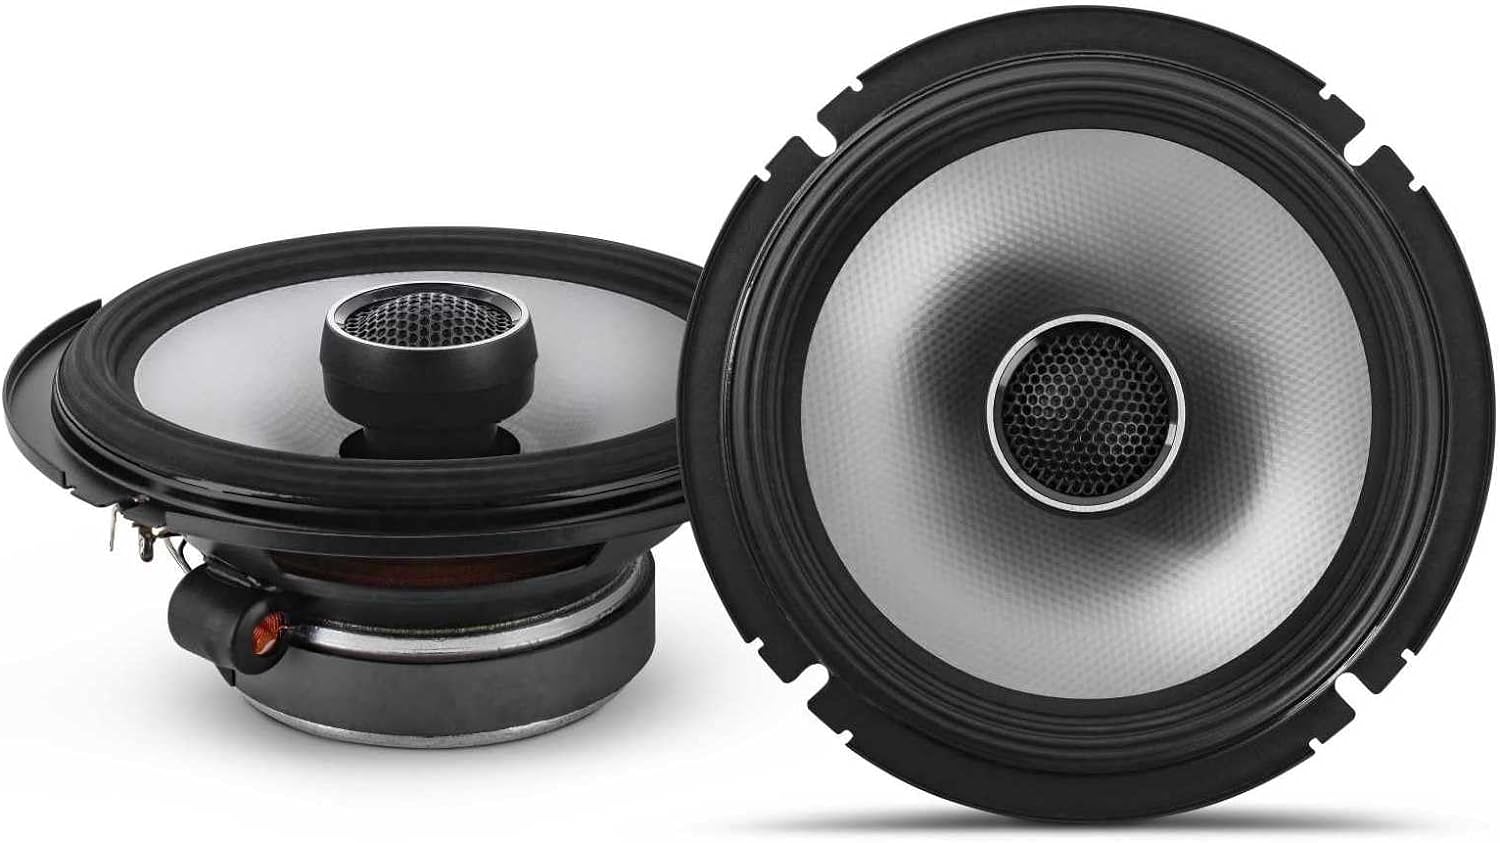 Alpine UTE-73BT In-Dash Digital Media Receiver Bluetooth & S2-S65C 6.5" Component & S2-S65 6.5" Speakers